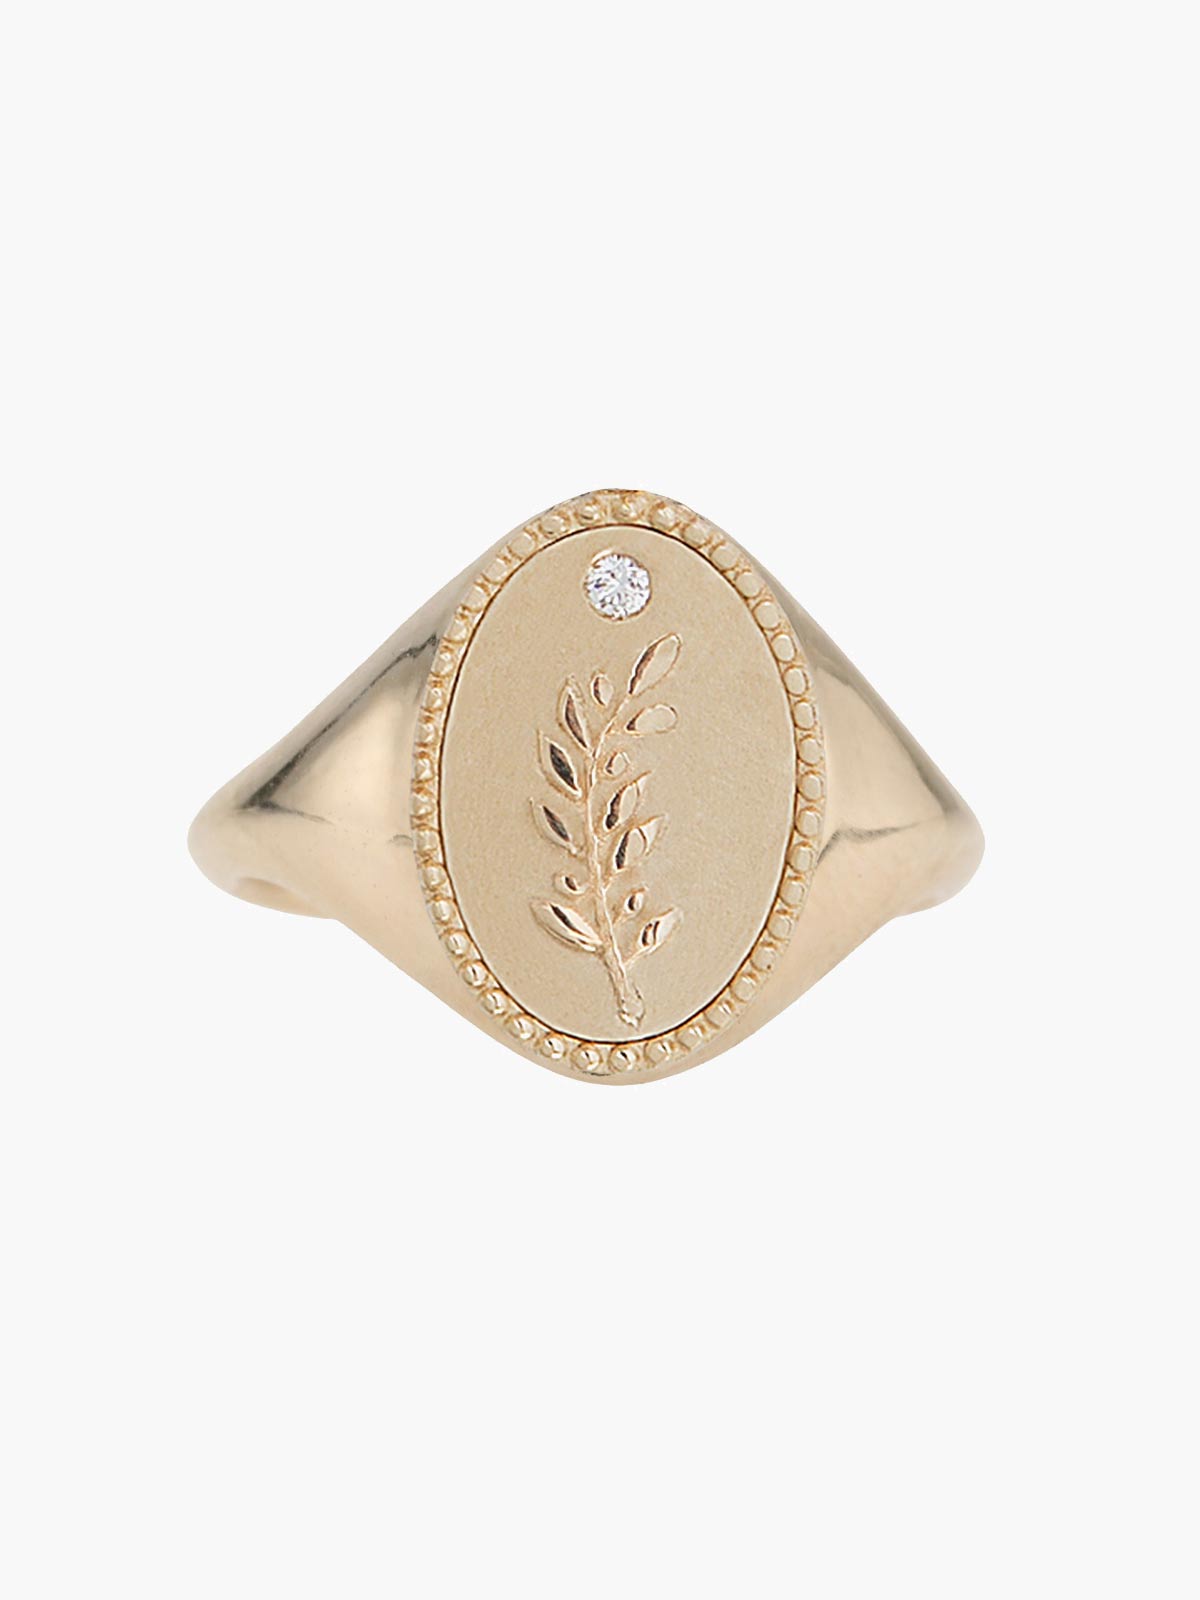 Signet Ring | Olive Branch Signet Ring | Olive Branch